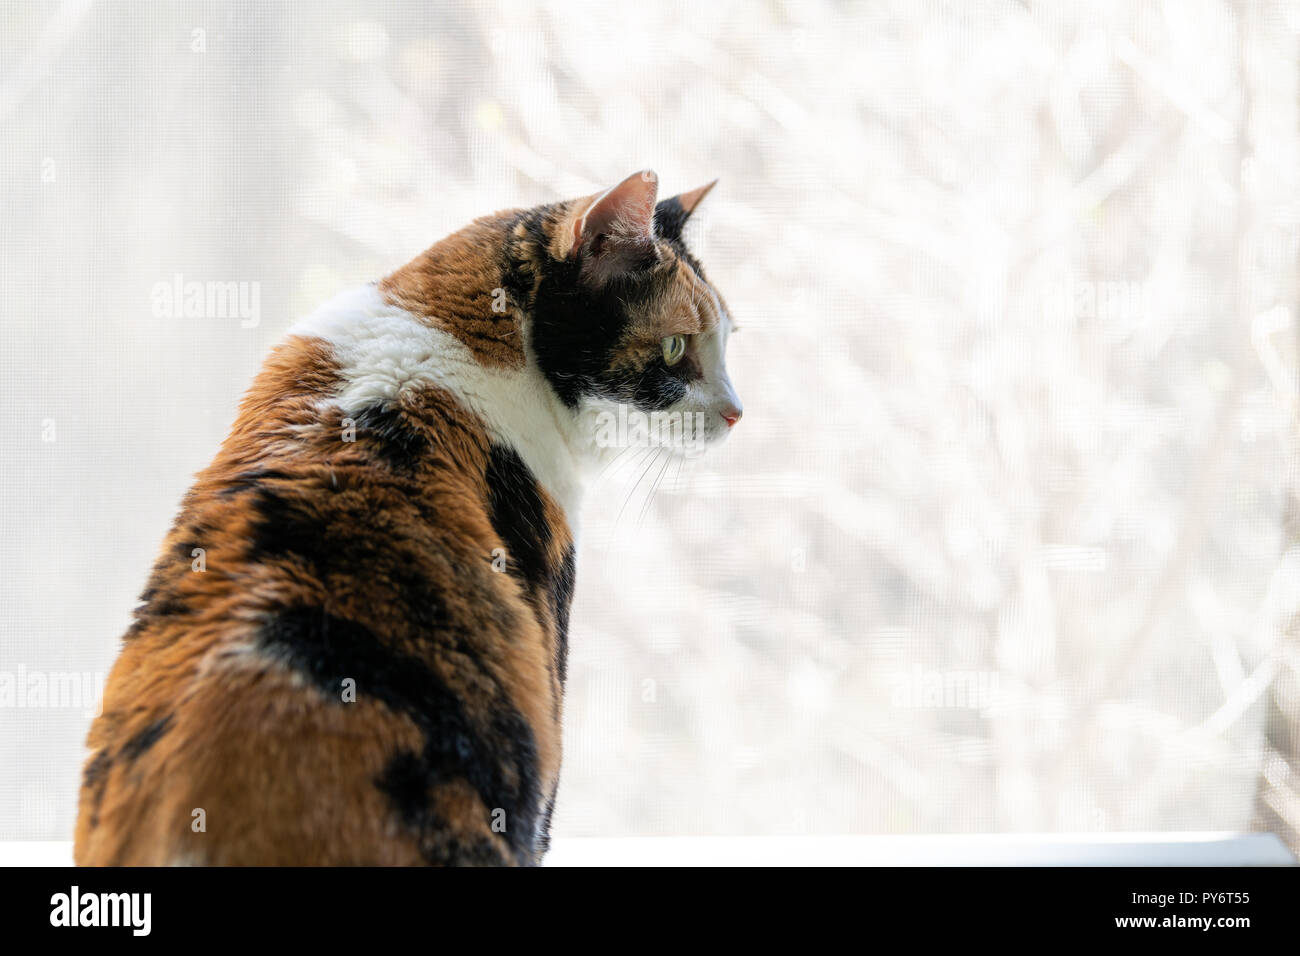 Gros plan du chat calico leaning on windowsill, appui de fenêtre, debout sur ses pattes de truc, à la regarder, jusqu'à l'extérieur à travers l'écran, regarder les oiseaux, bi Banque D'Images